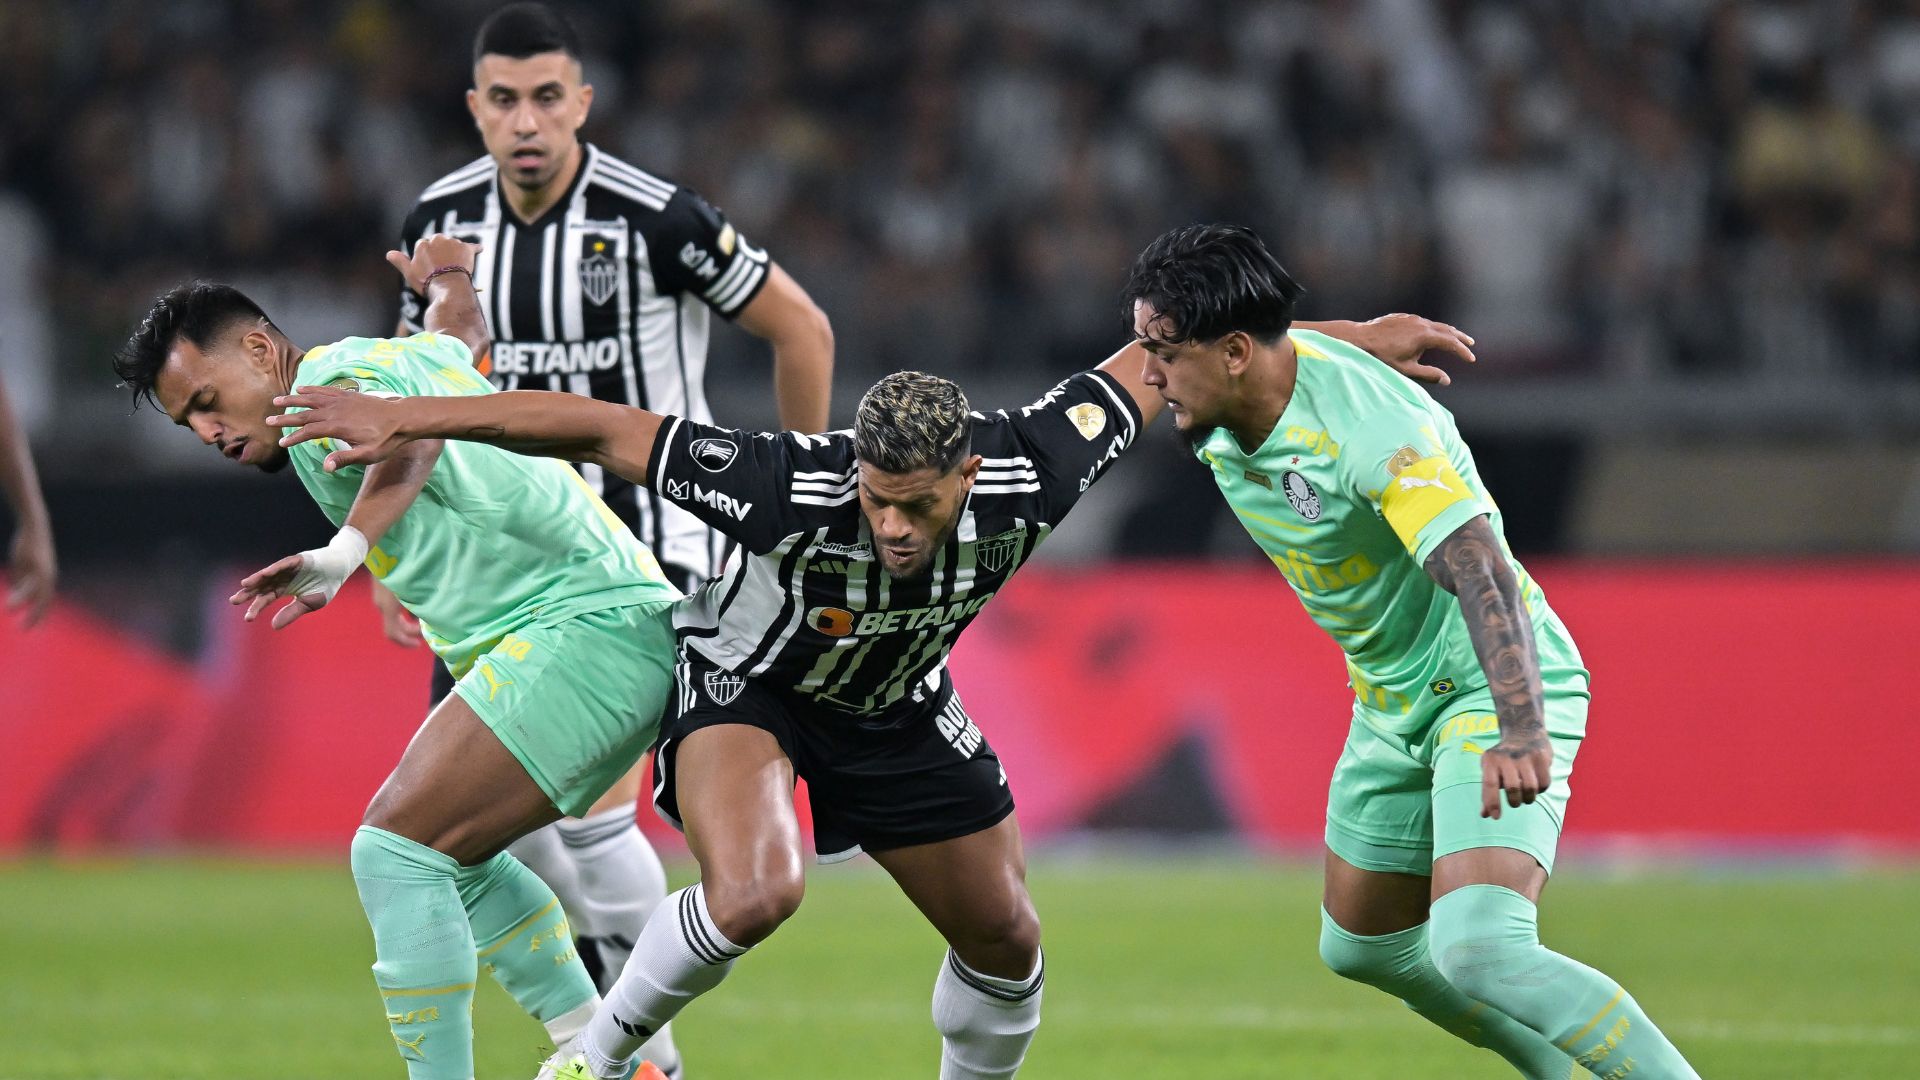 RGL - Como o Palmeiras transformou atropelo em virada épica e forç